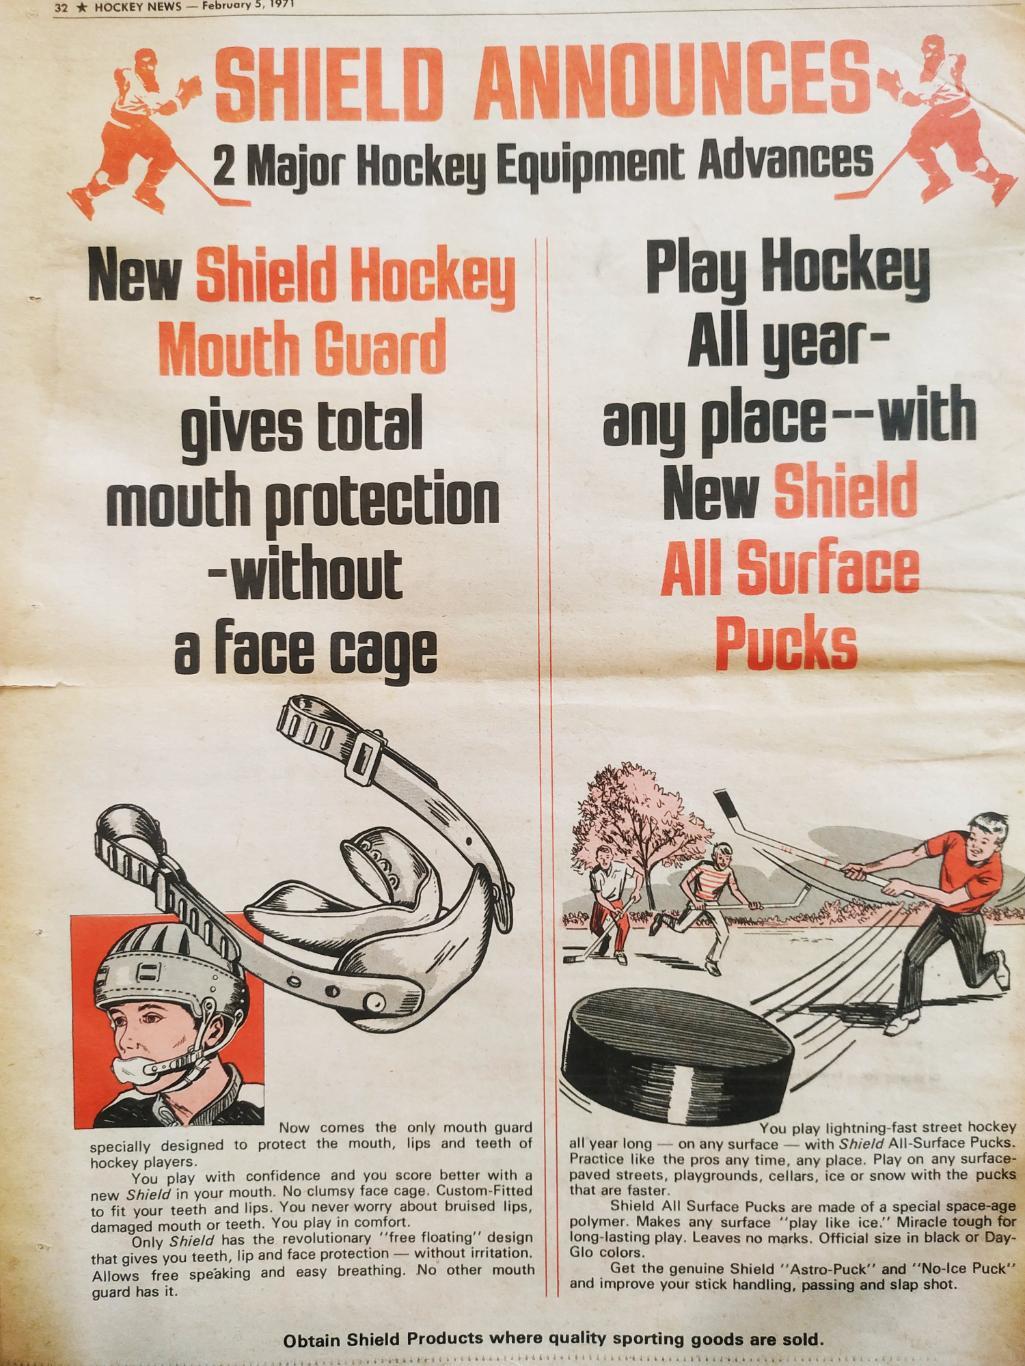 ХОККЕЙ ЖУРНАЛ ЕЖЕНЕДЕЛЬНИК НХЛ НОВОСТИ ХОККЕЯ FEB.5 1971 NHL THE HOCKEY NEWS 6